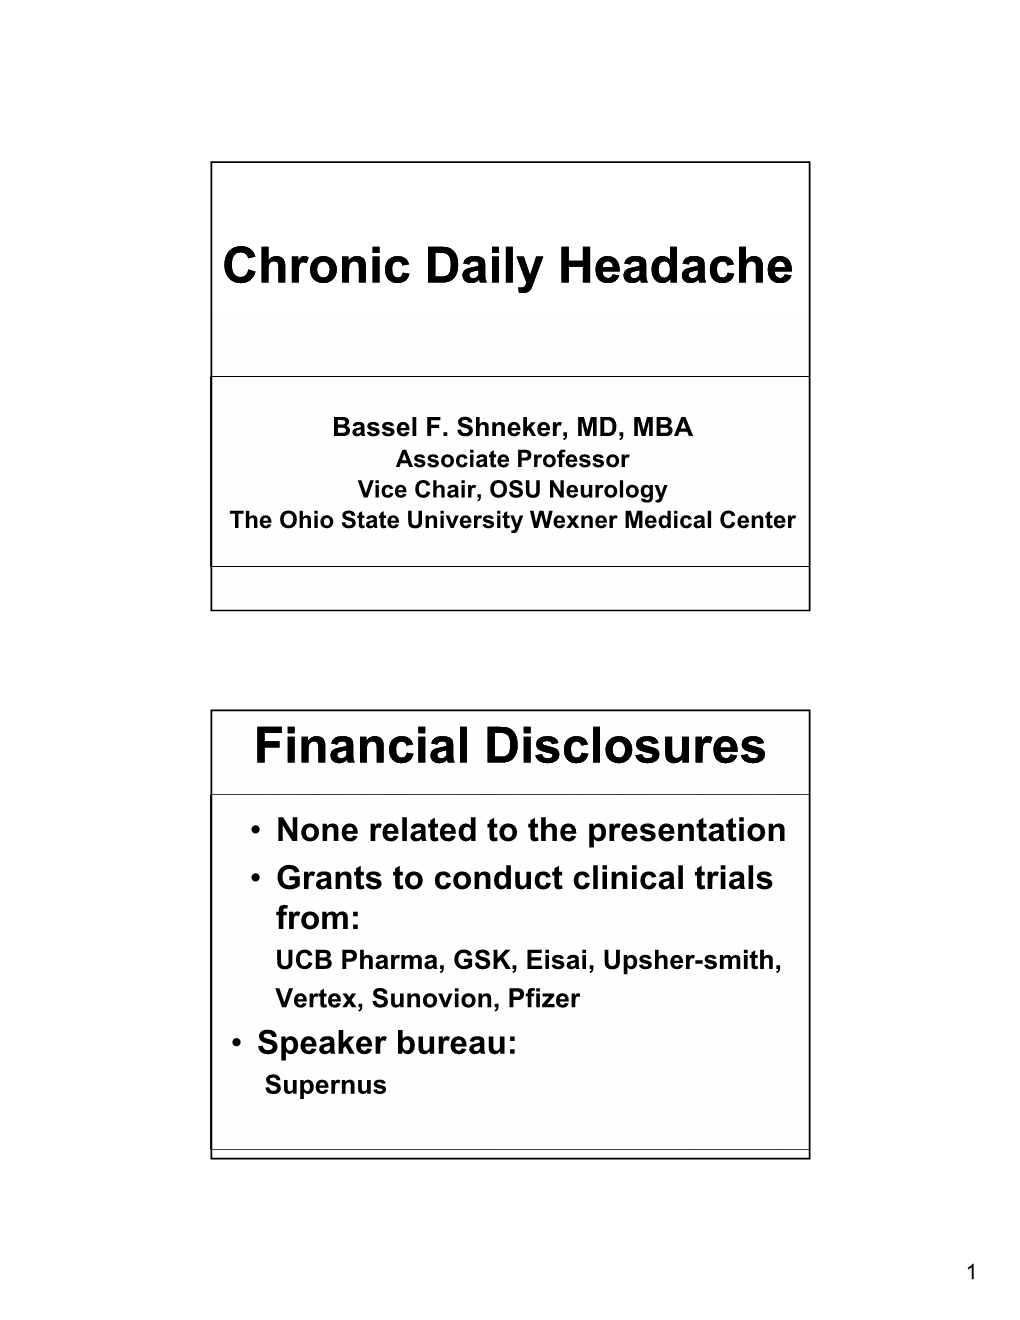 Chronic Daily Headache Financial Disclosures